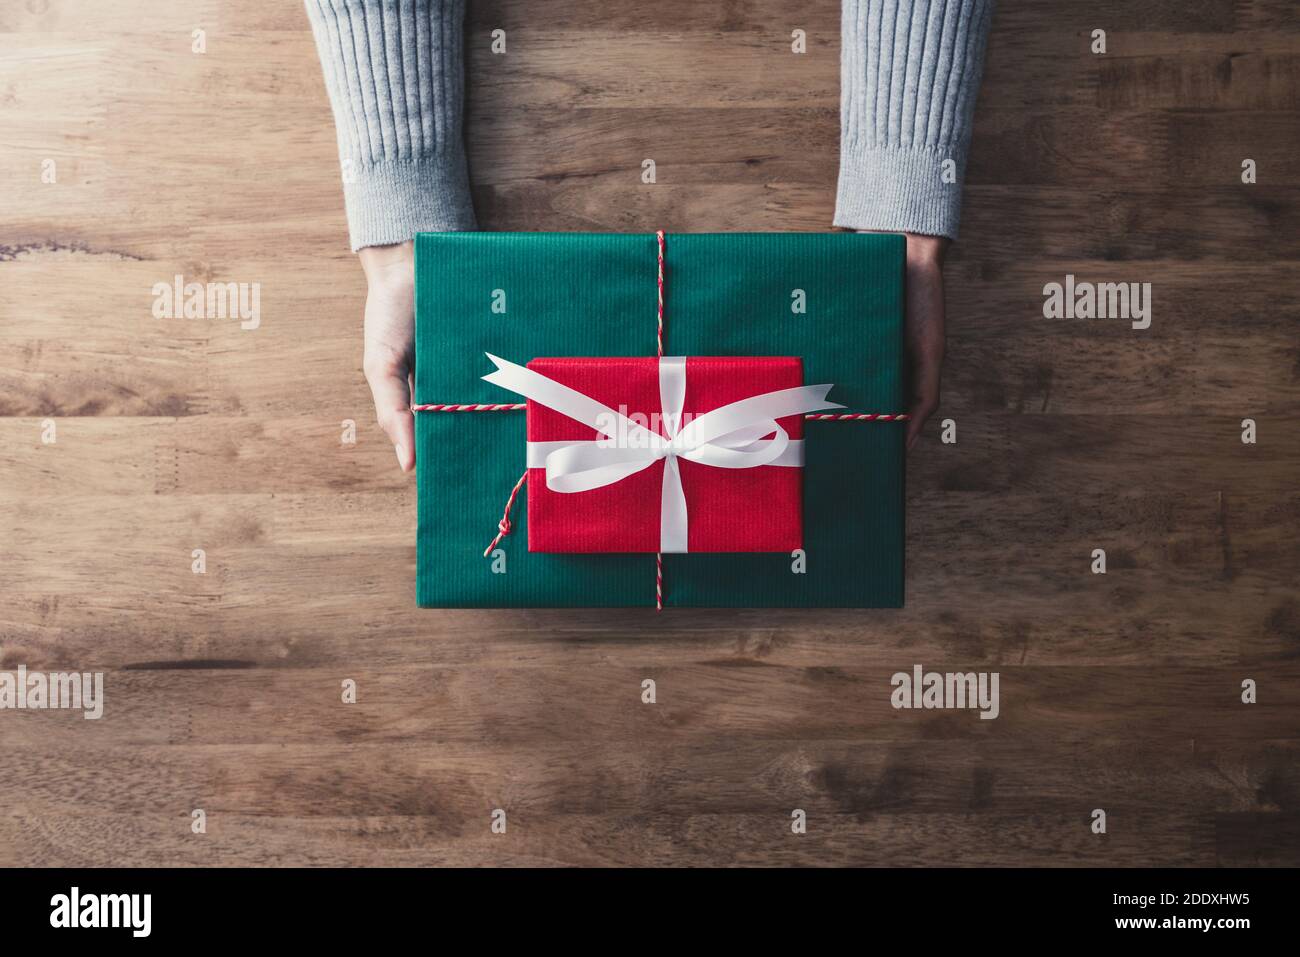 Frau trägt grauen Pullover geben rote und grüne Geschenkboxen für Weihnachtsgeschenk, Draufsicht Stockfoto